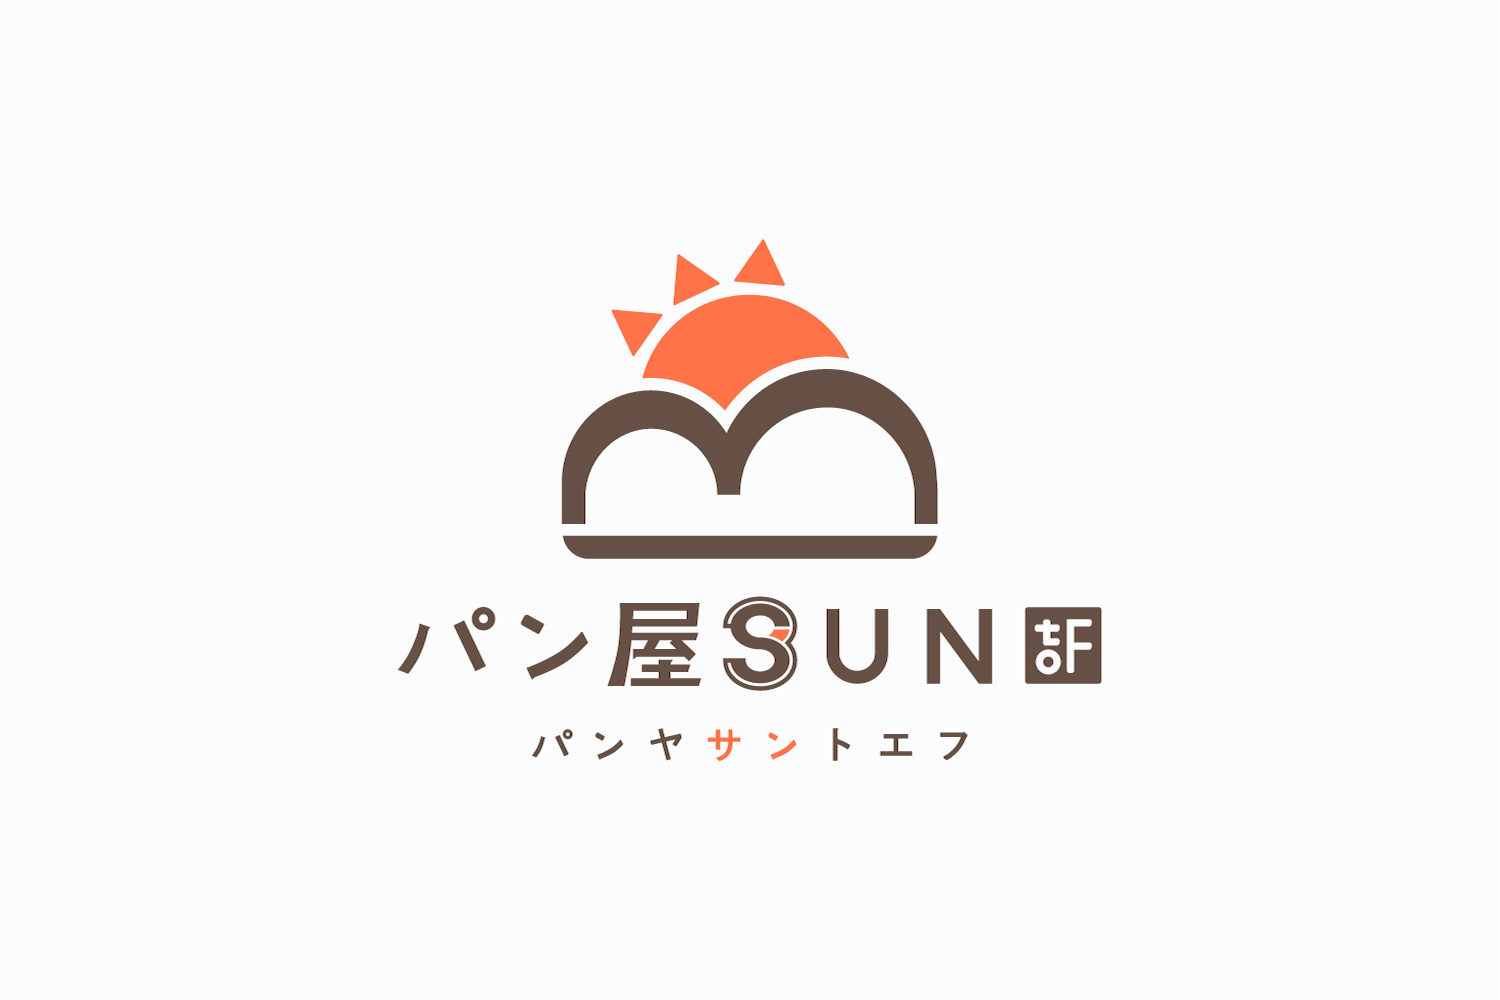 パン屋のロゴマークデザイン_パン屋SUNtoF